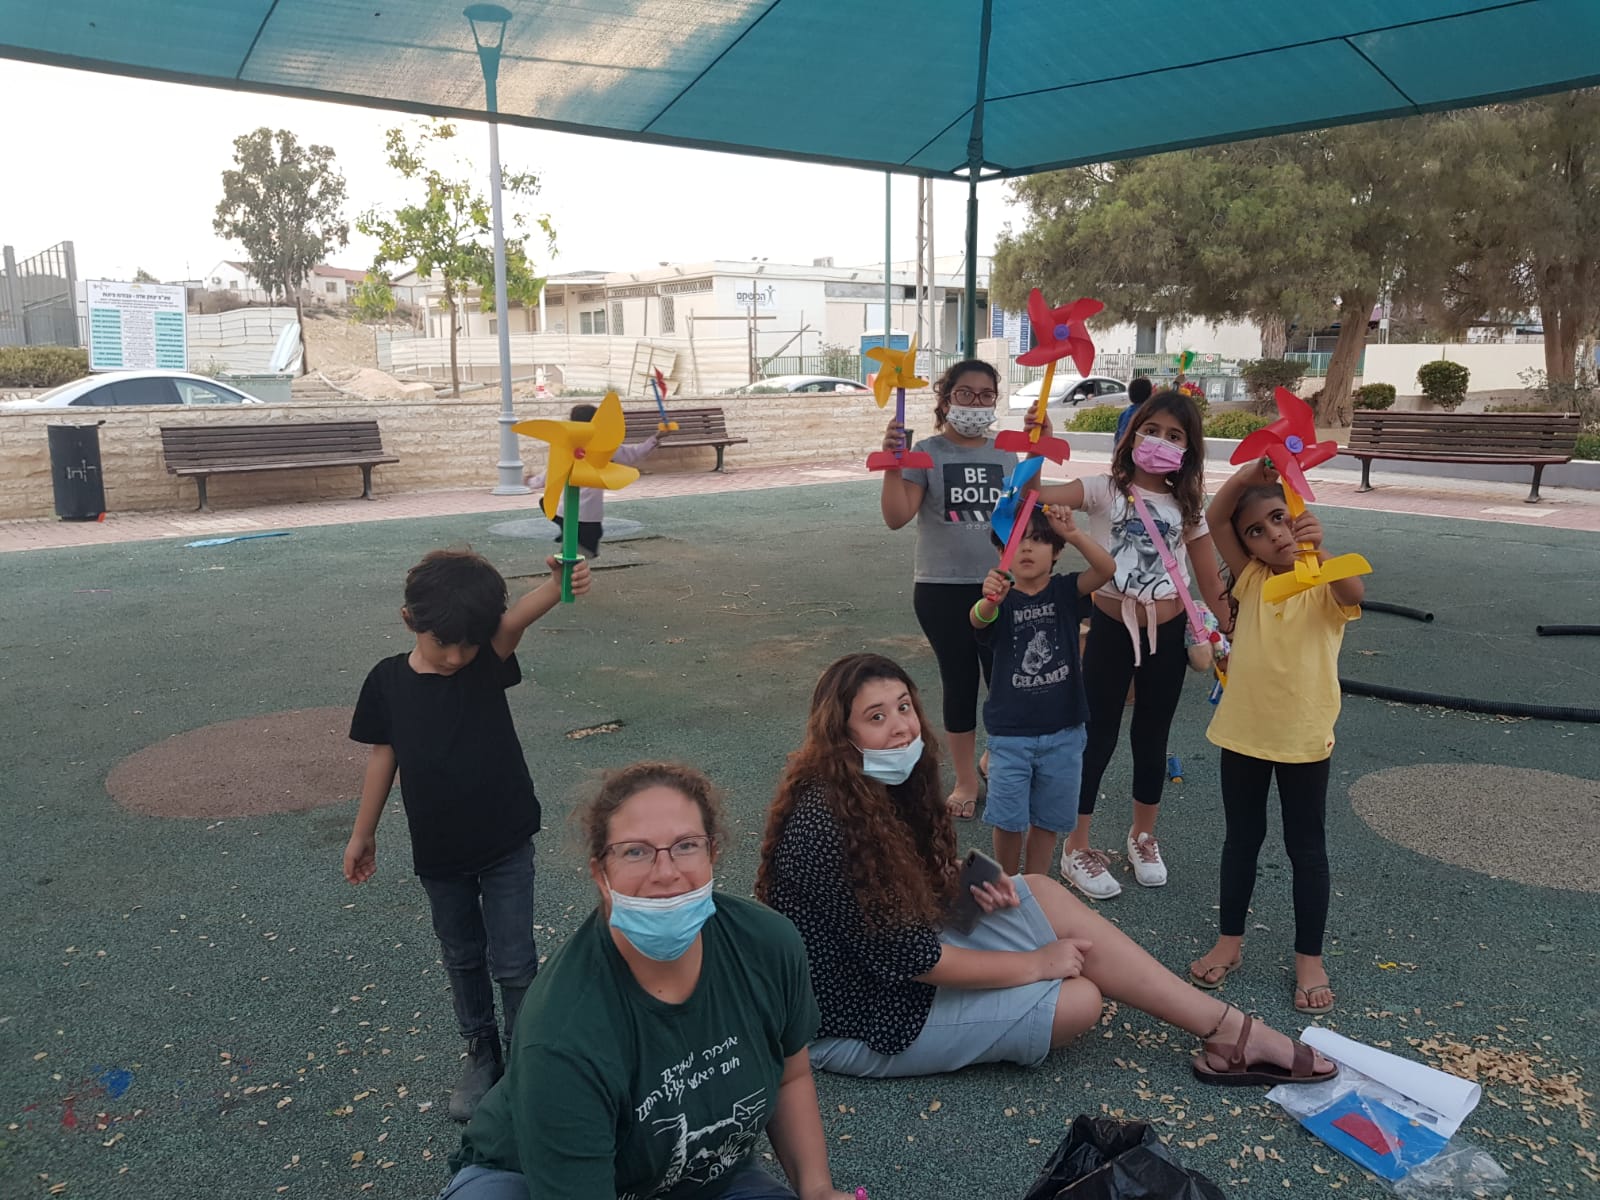 רק בגלל הרוח: פעילויות פנאי בנושא רוח עבור ילדי שכונת 'יצחק שדה' בעיר ירוחם